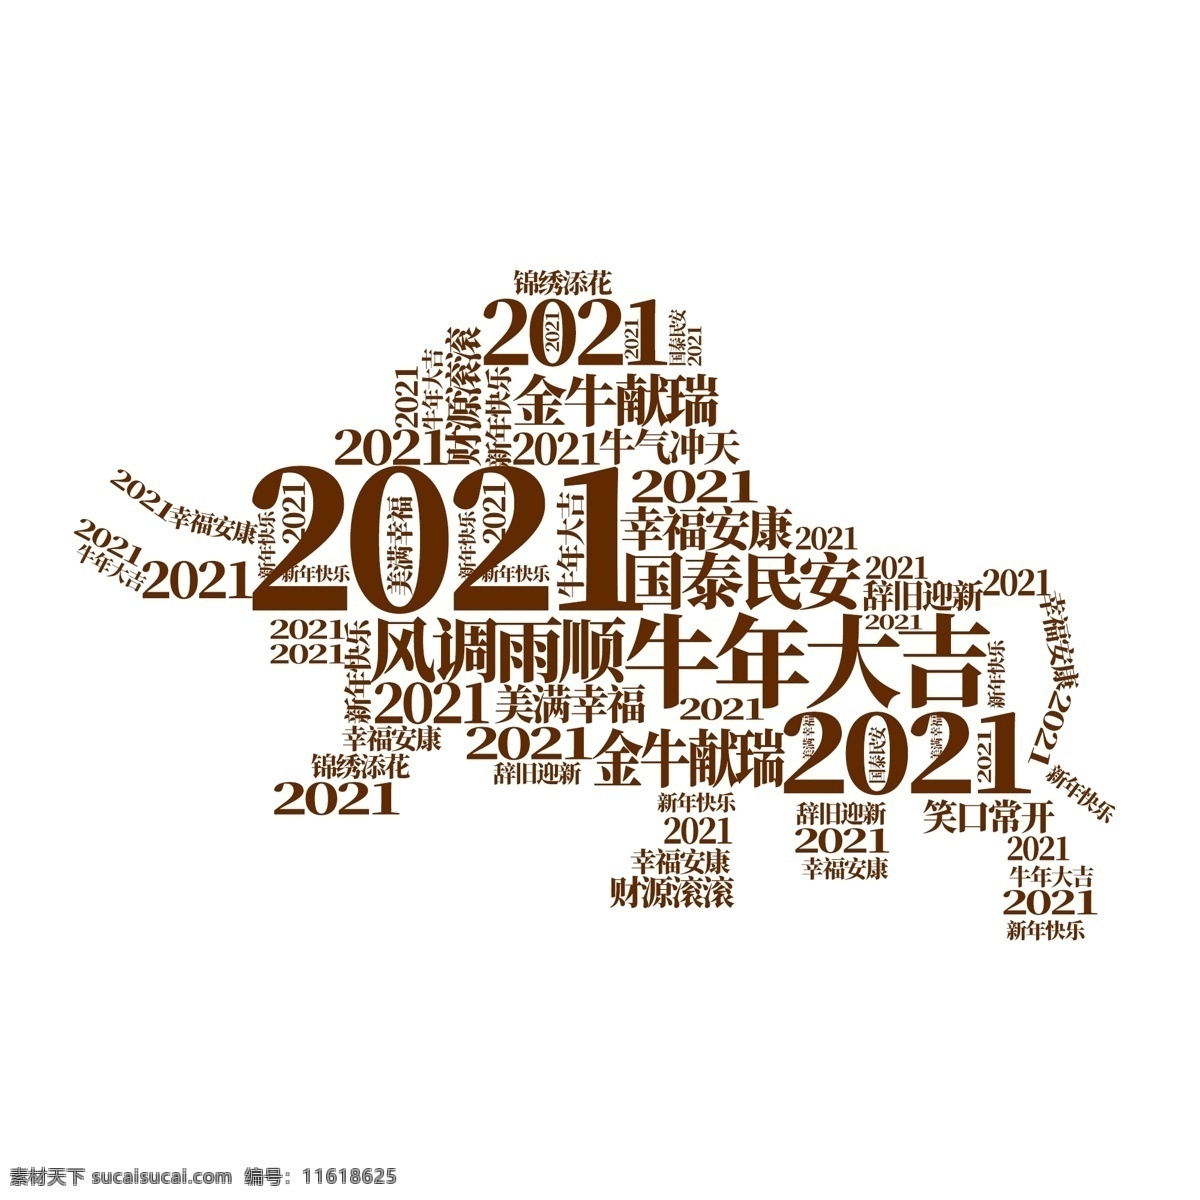 牛年大吉图片 牛年大吉 2020 新年祝福语 新年 牛异性 牛气冲天 分层